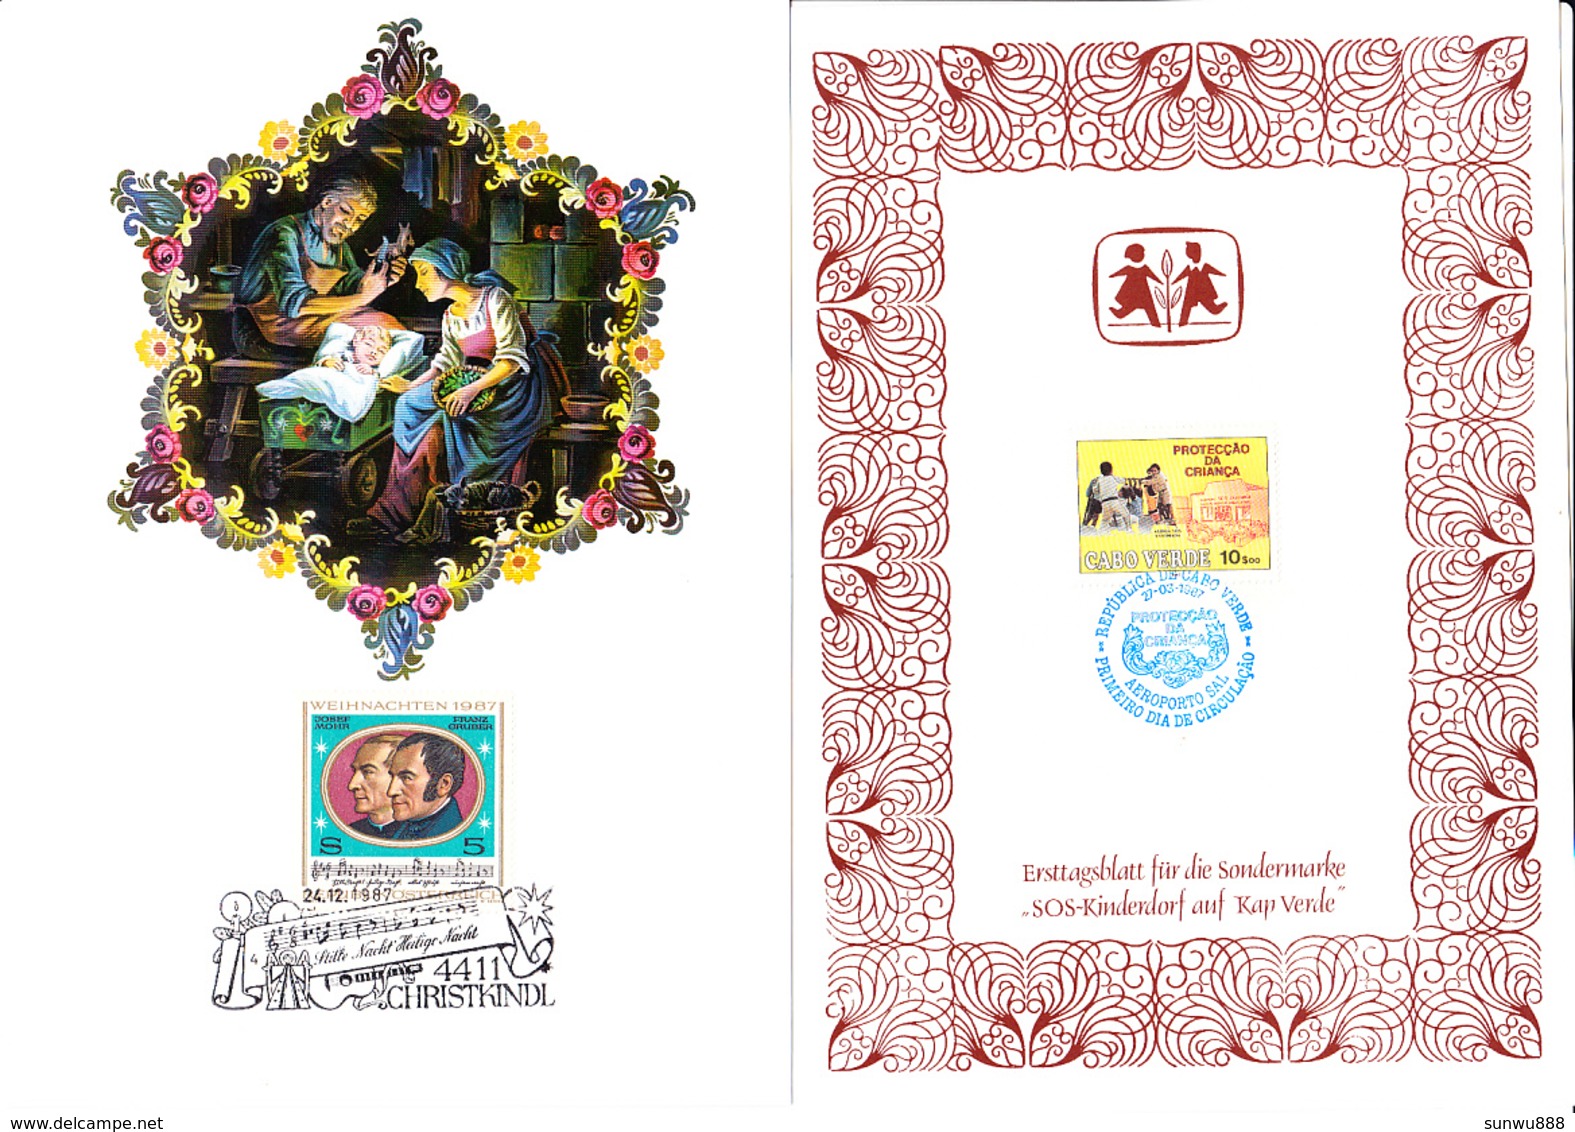 Superbe Lot SOS Children Kinderdorf (Envelop stamp/ FDC Personality/ hologram...)